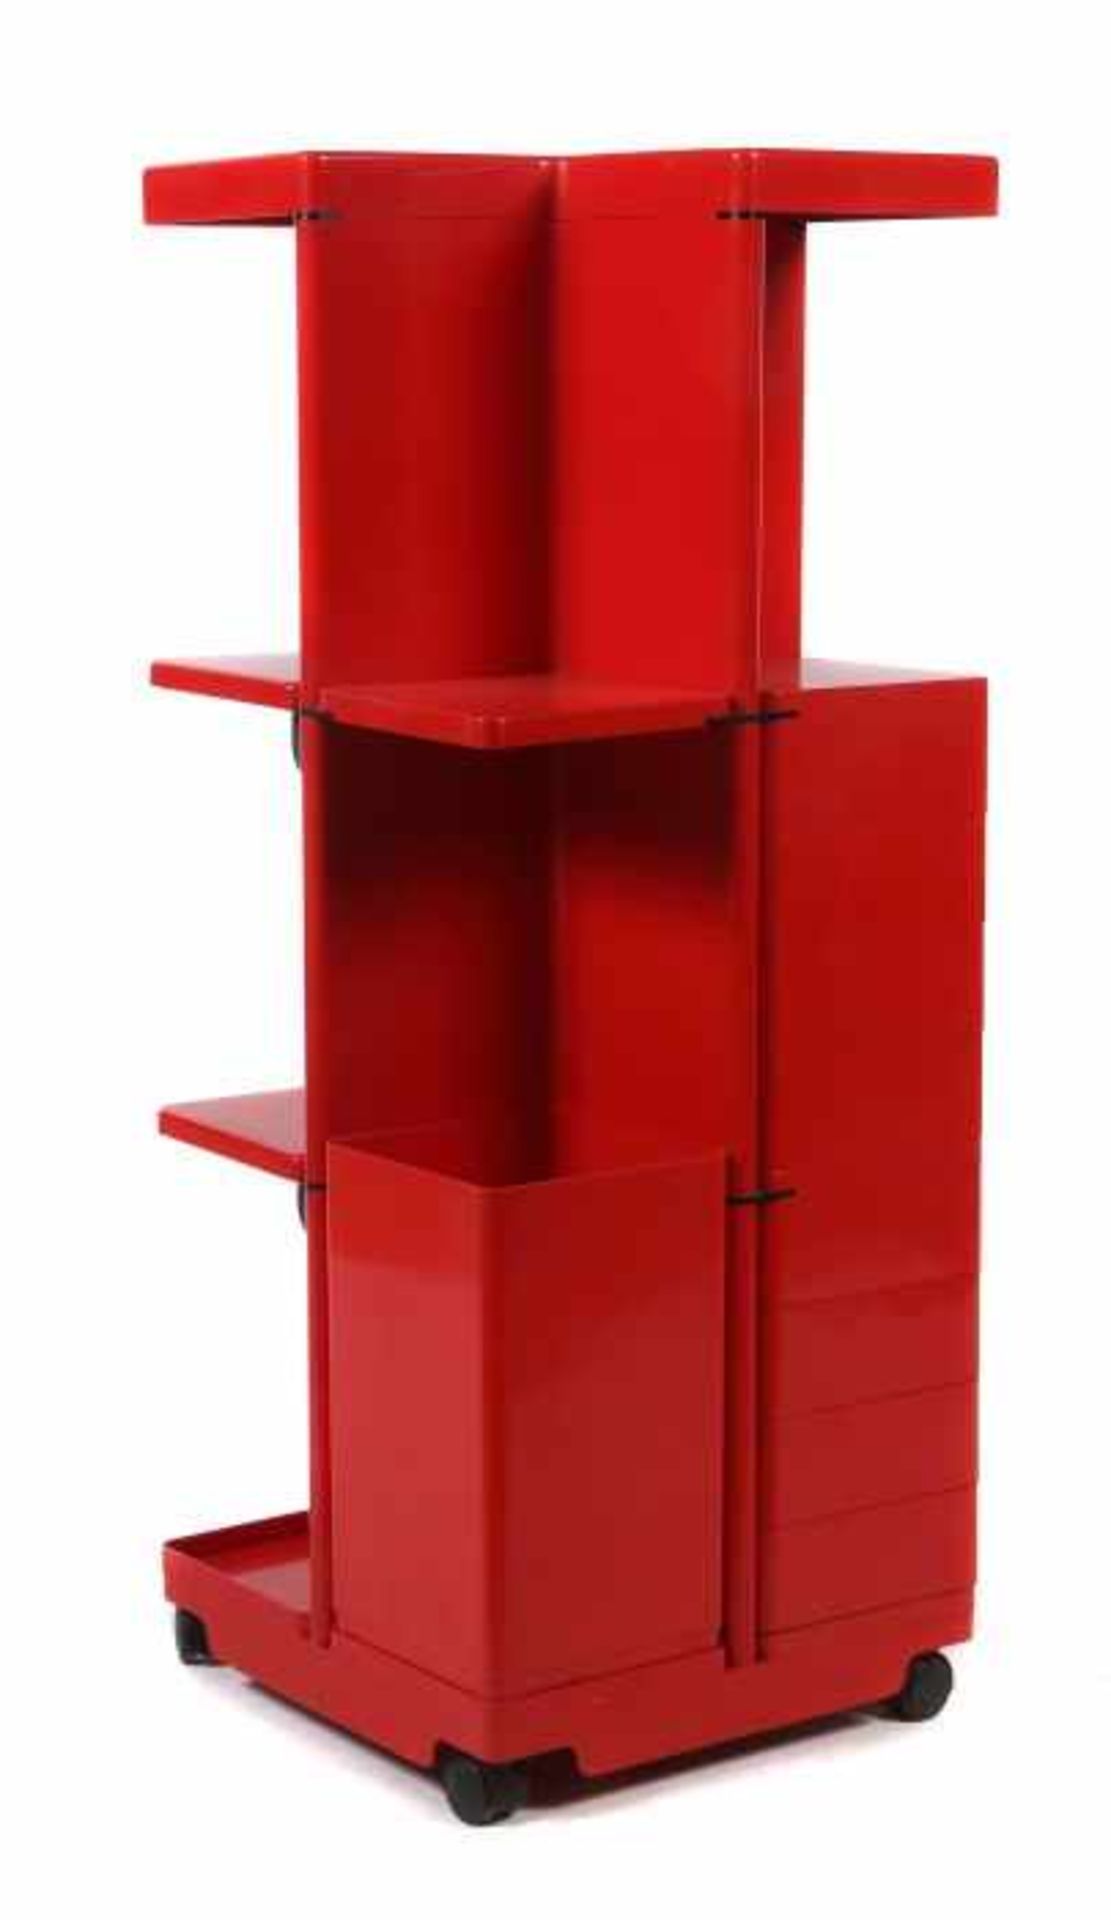 Rollcontainer 1970er Jahre, roter Kunststoff, quadratische Form, mit 8 schwenkbaren Schubladen, 3